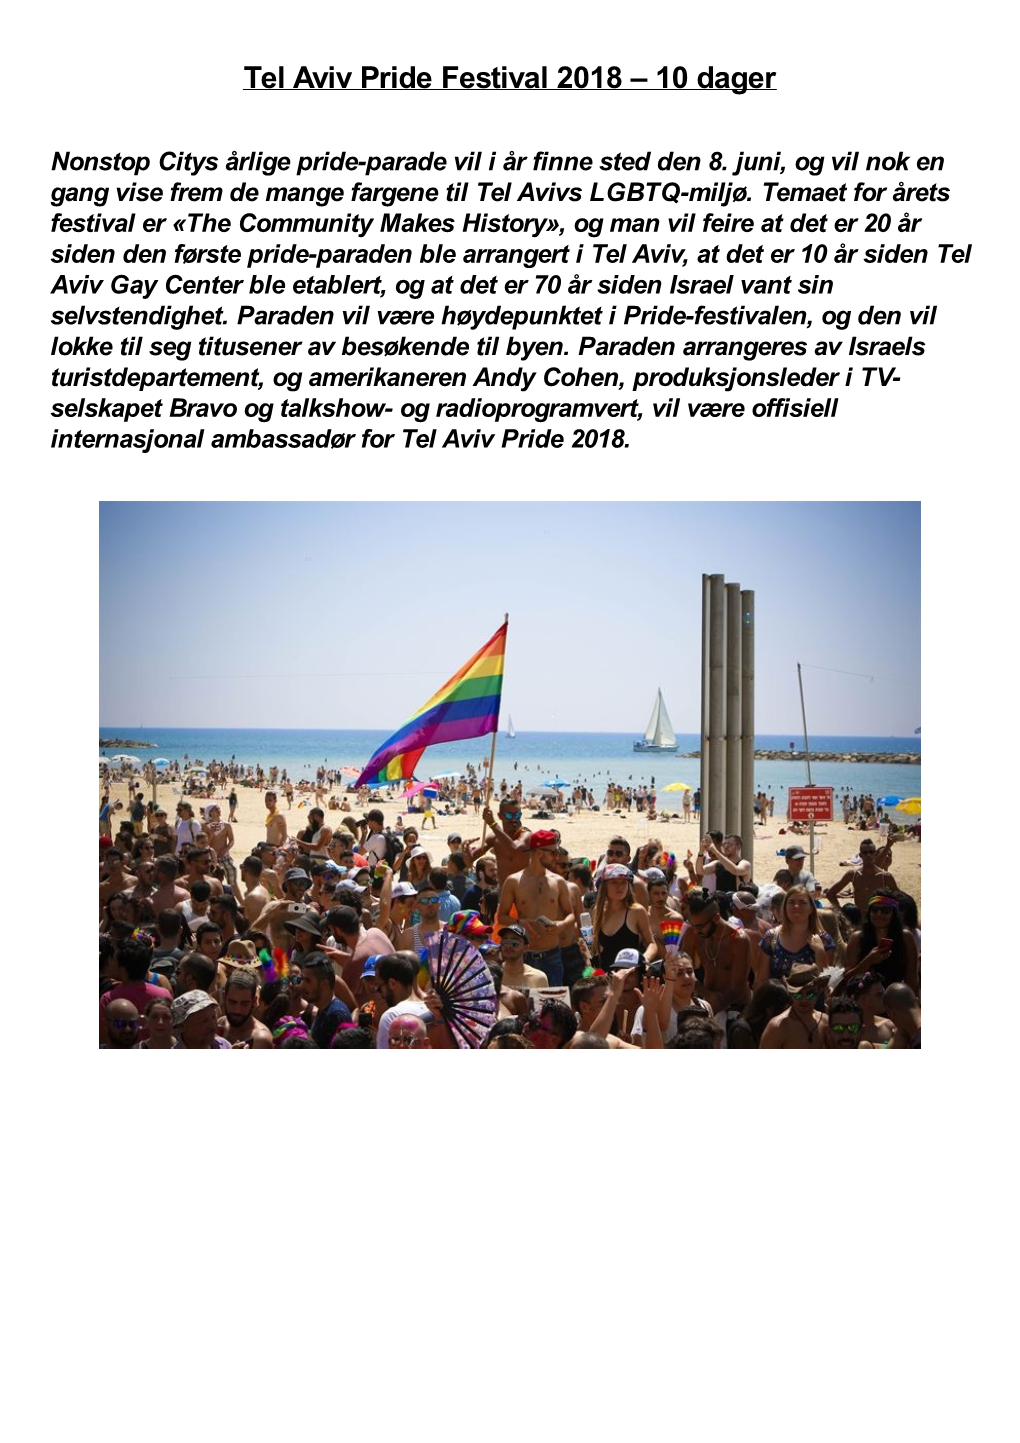 Tel Aviv Pride Festival 2018 – 10 Dager